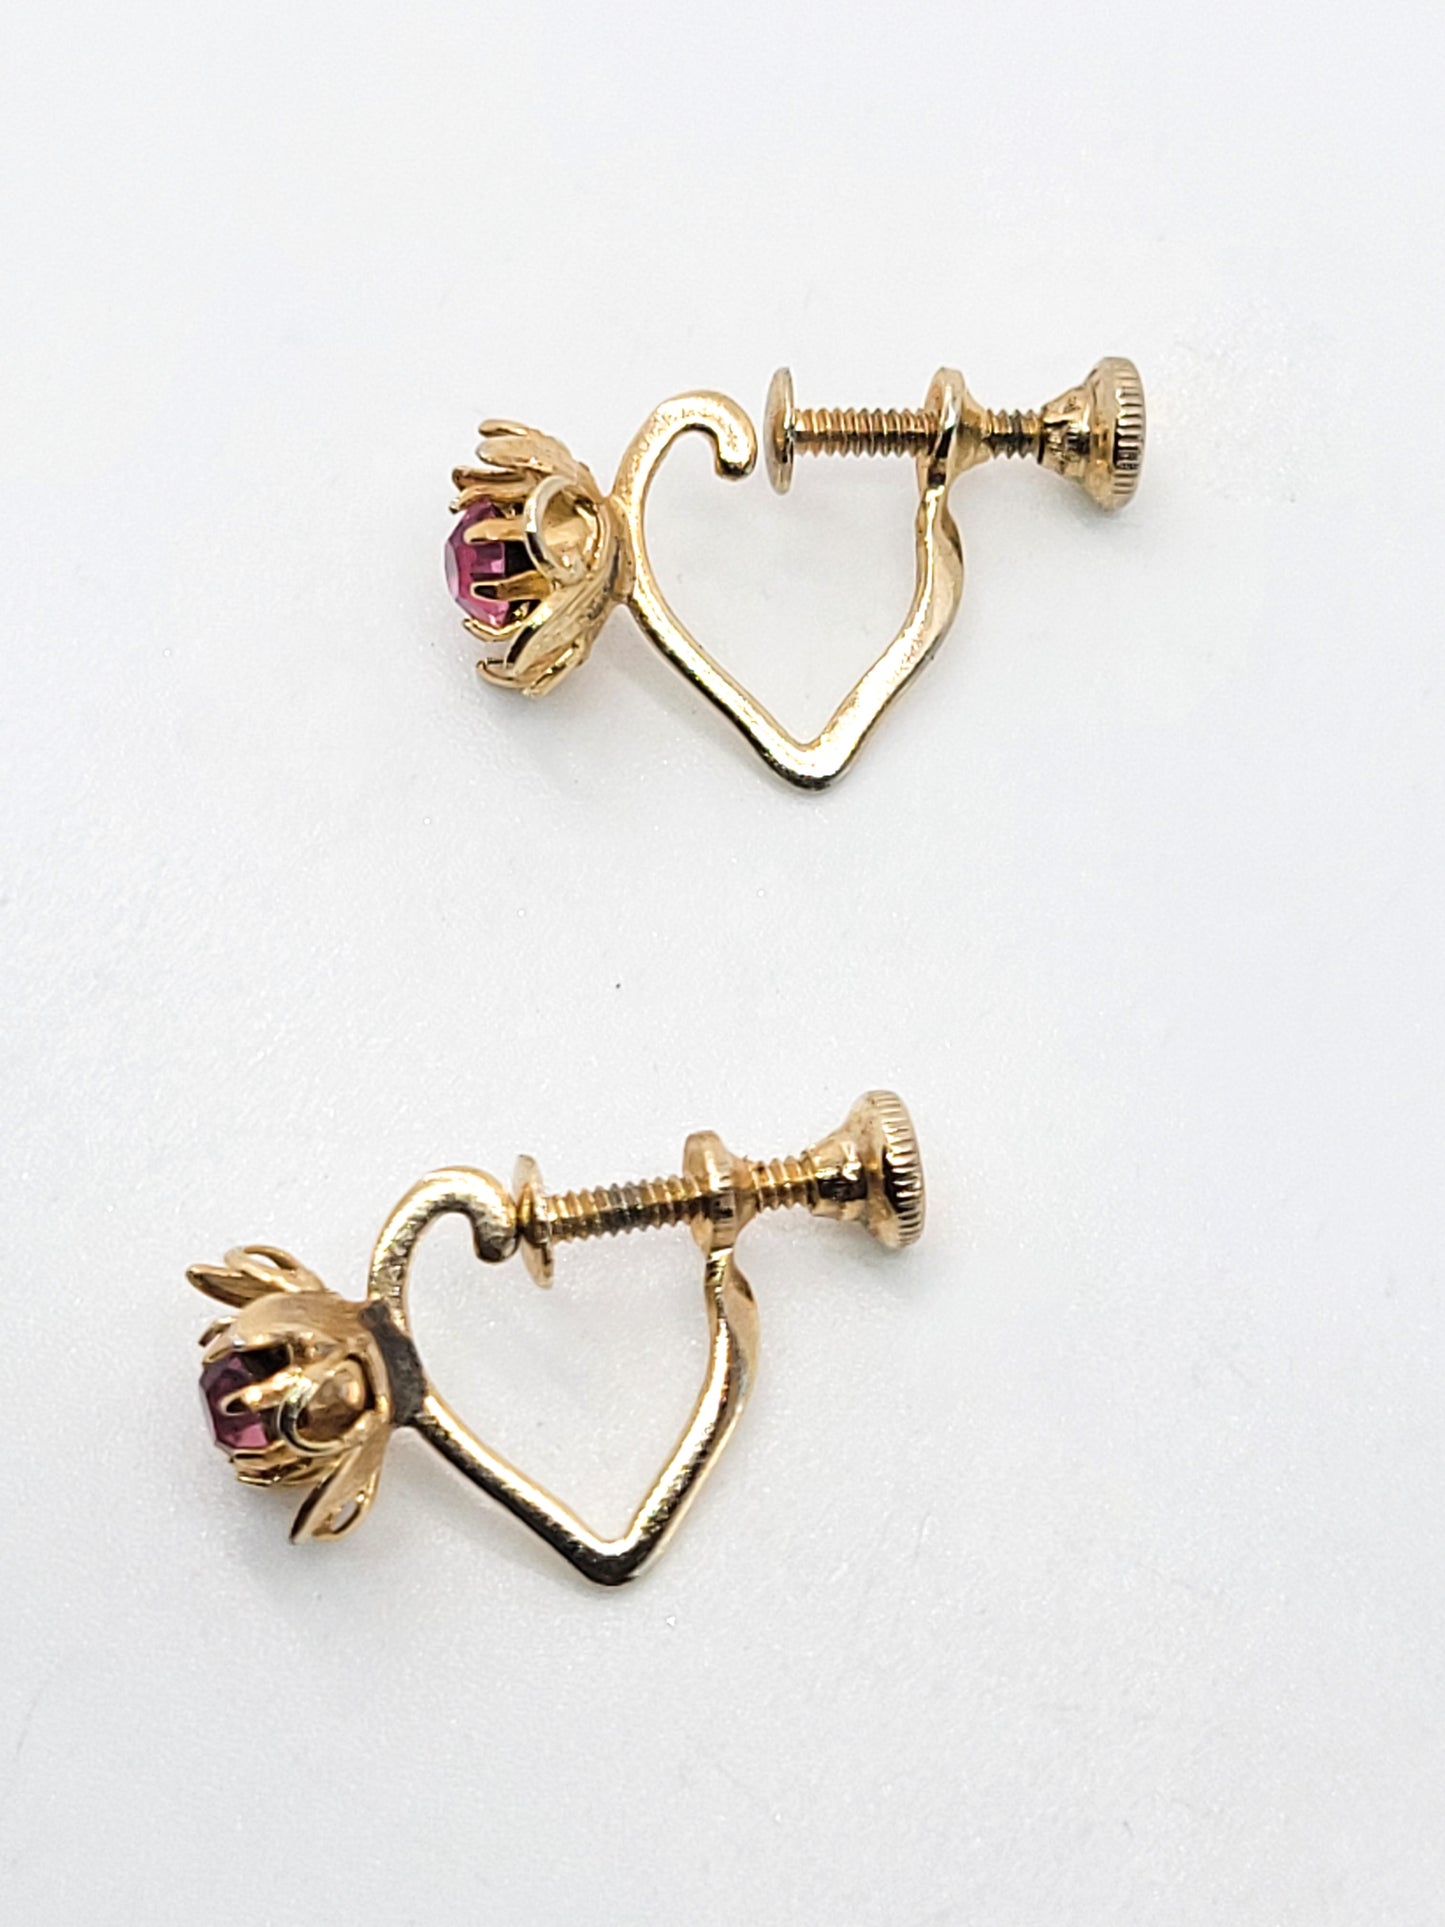 Gold heart hoop earrings with pink rhinestone flower vintage screw back